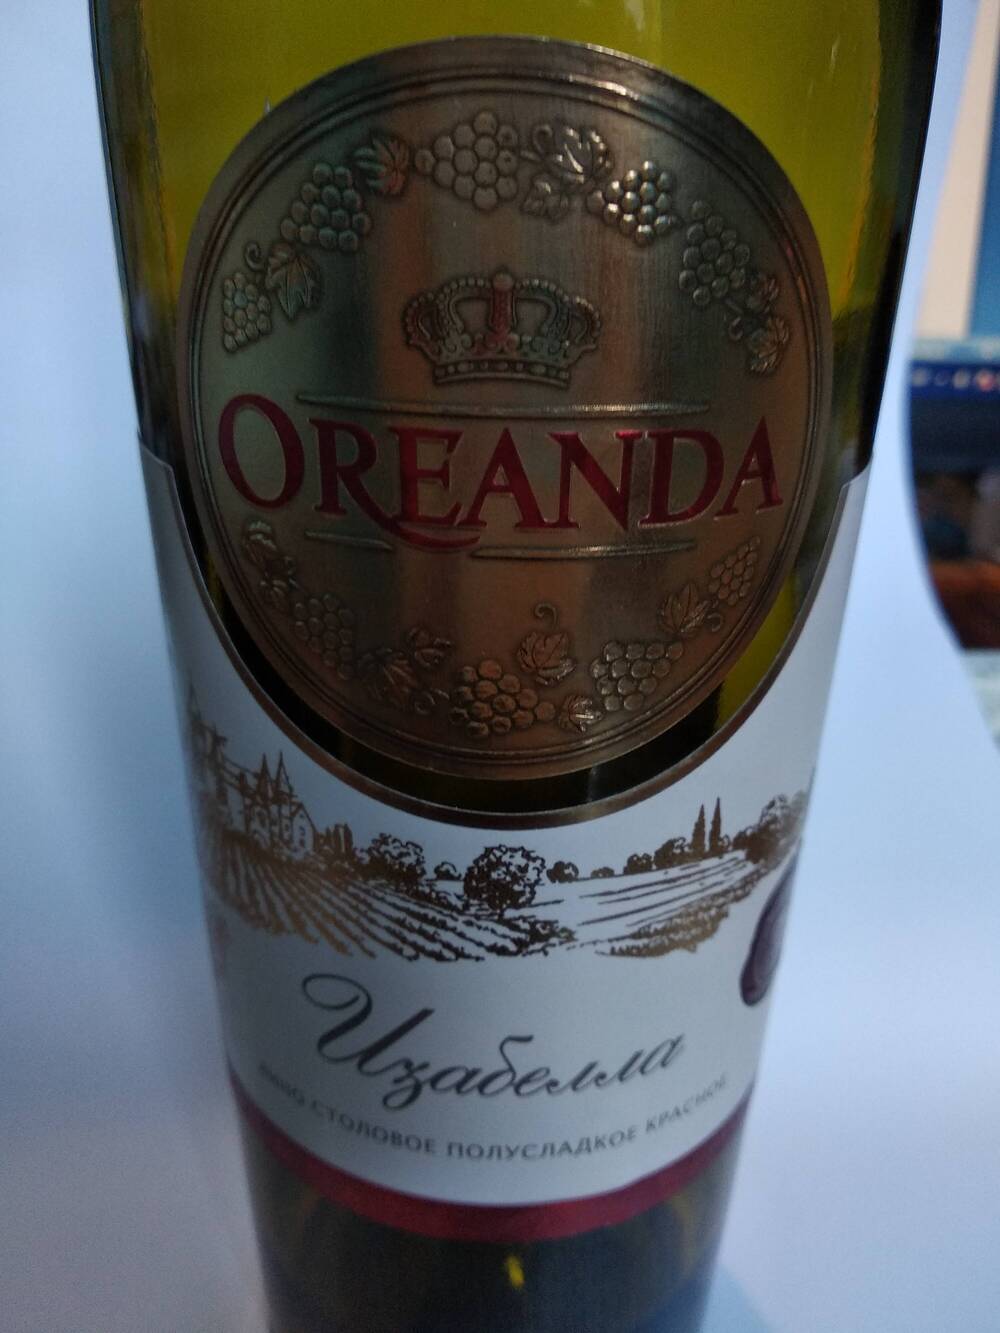 Бутылка винная.
Вино столовое полусладкое красное «Изабелла» Ореанда.  Изготовлено «Крымский винный дом», Феодосия.